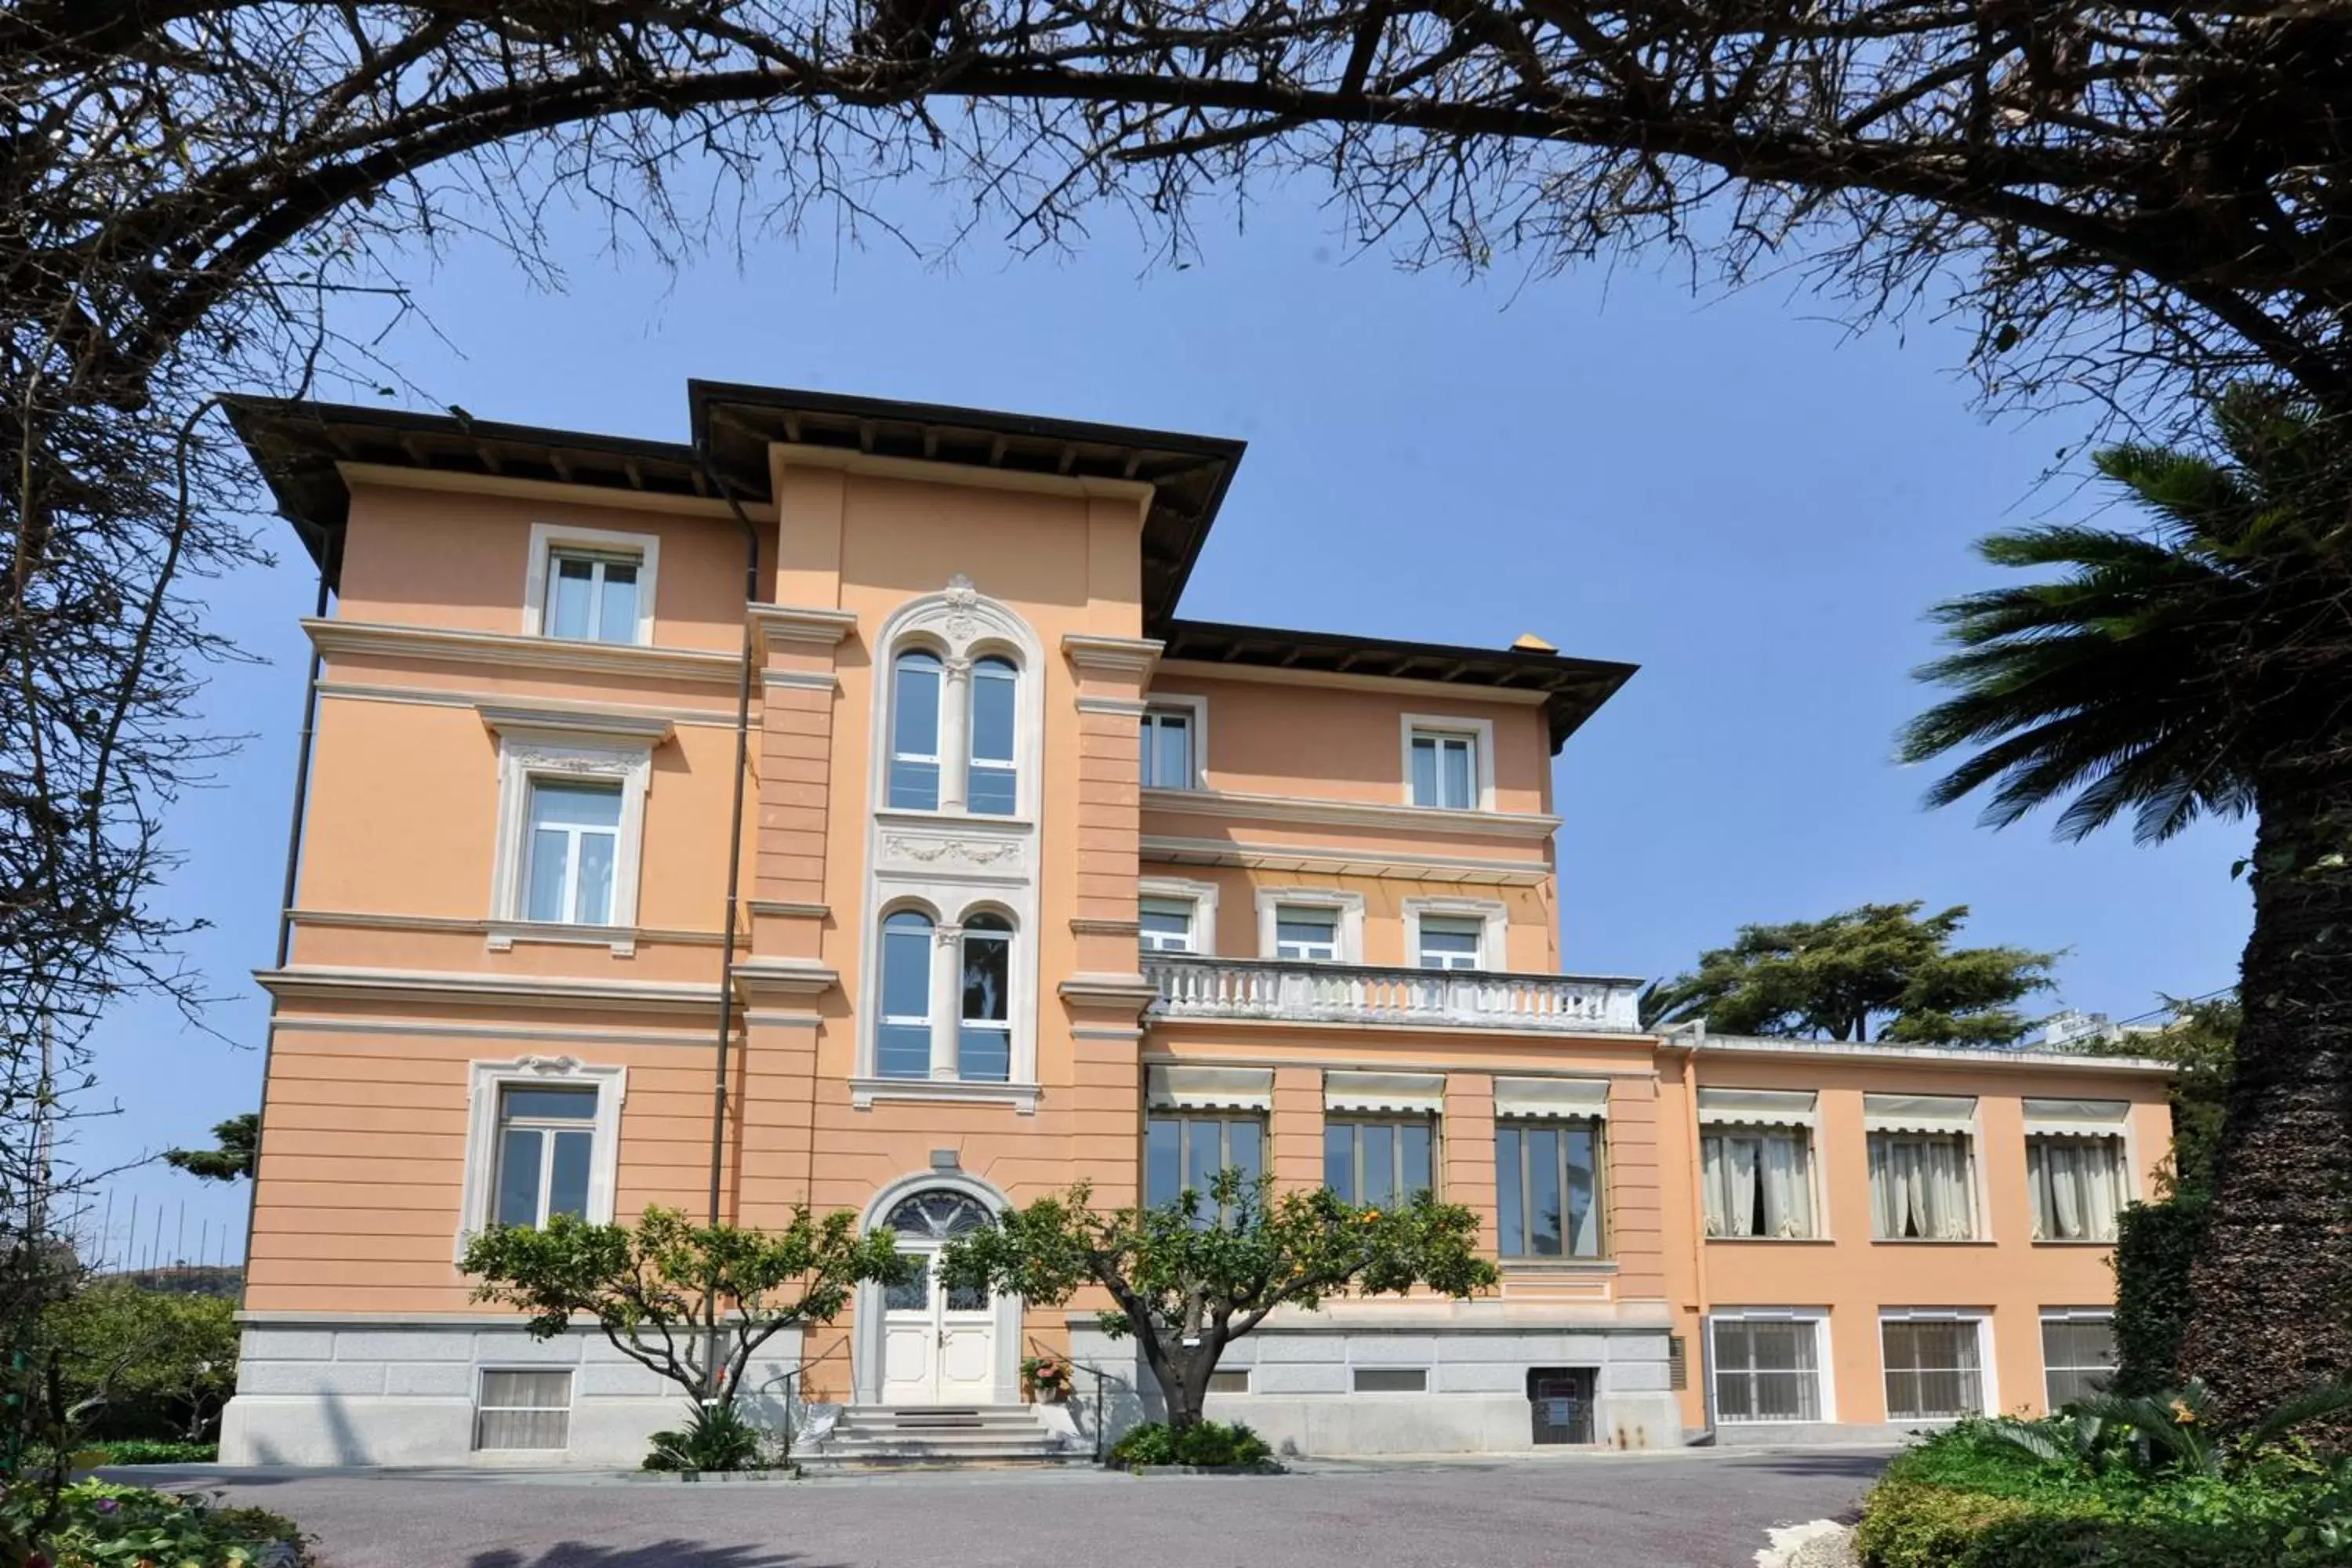 Facade/entrance, Property Building in Hotel Villa San Giuseppe